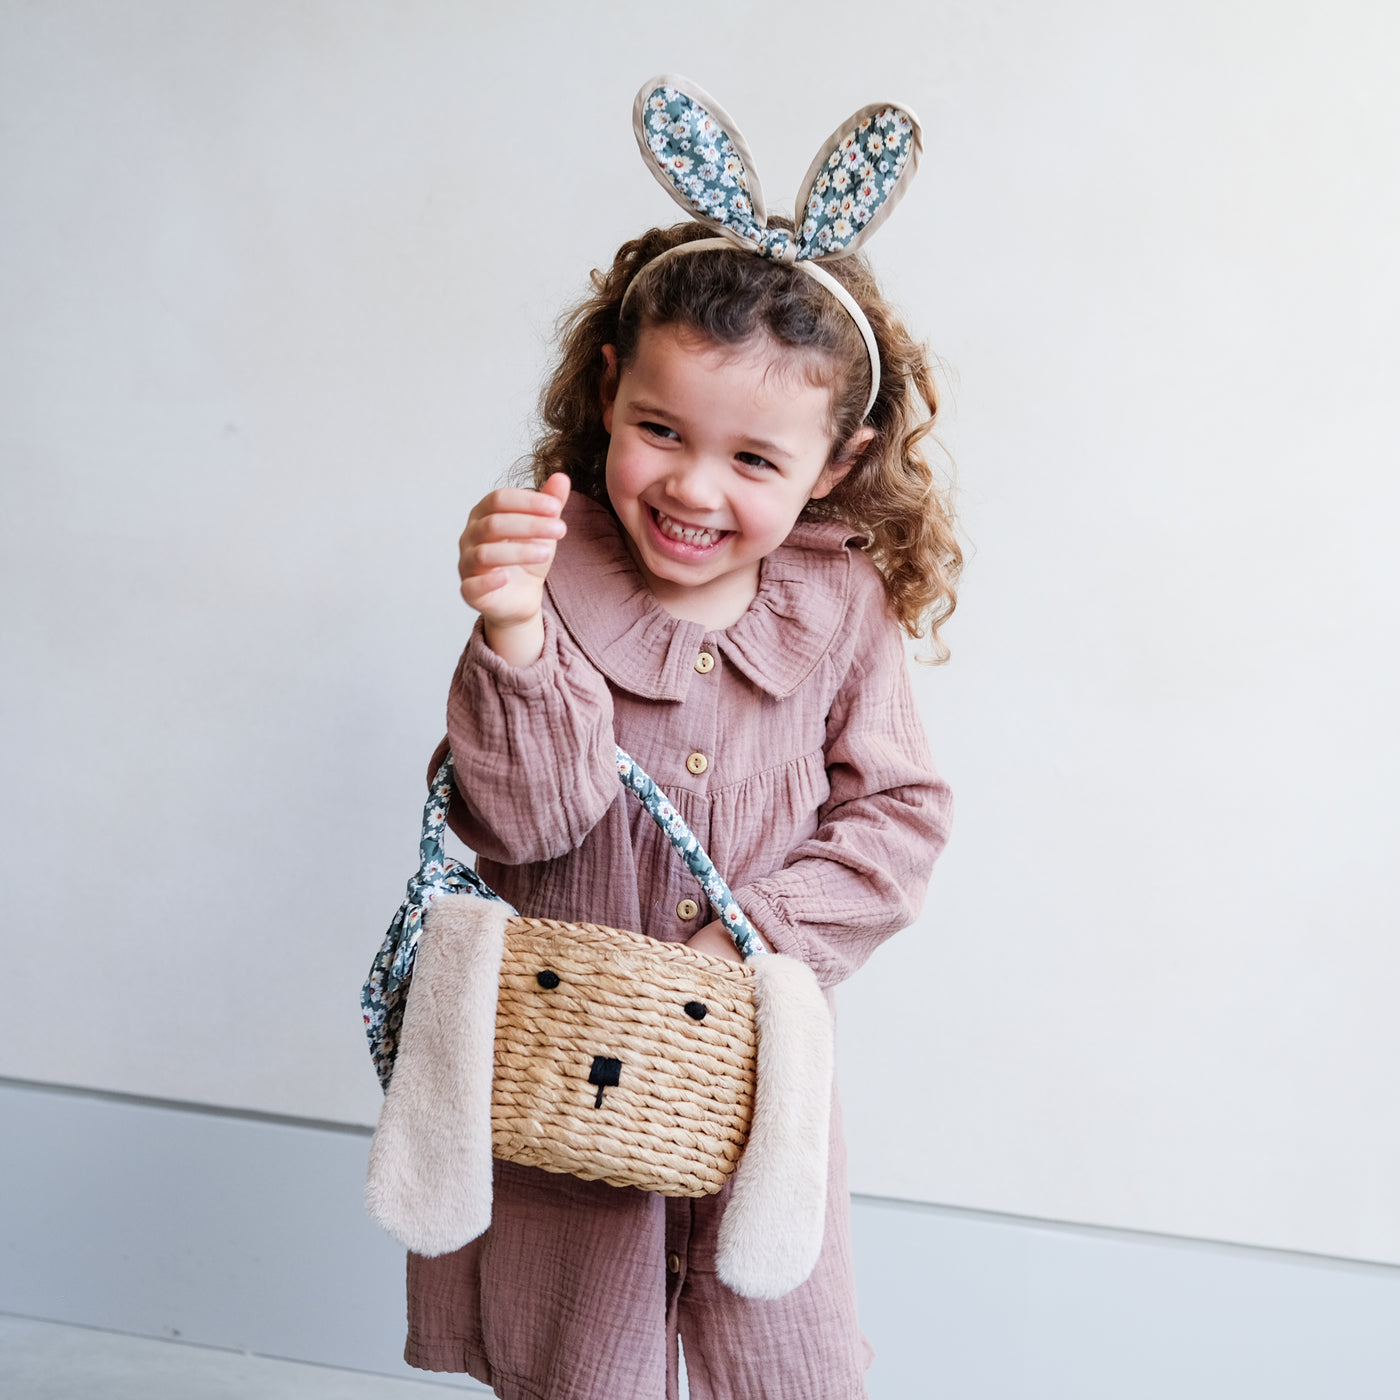 little girl with daisy print bunny ears headband holding Easter bunny basket